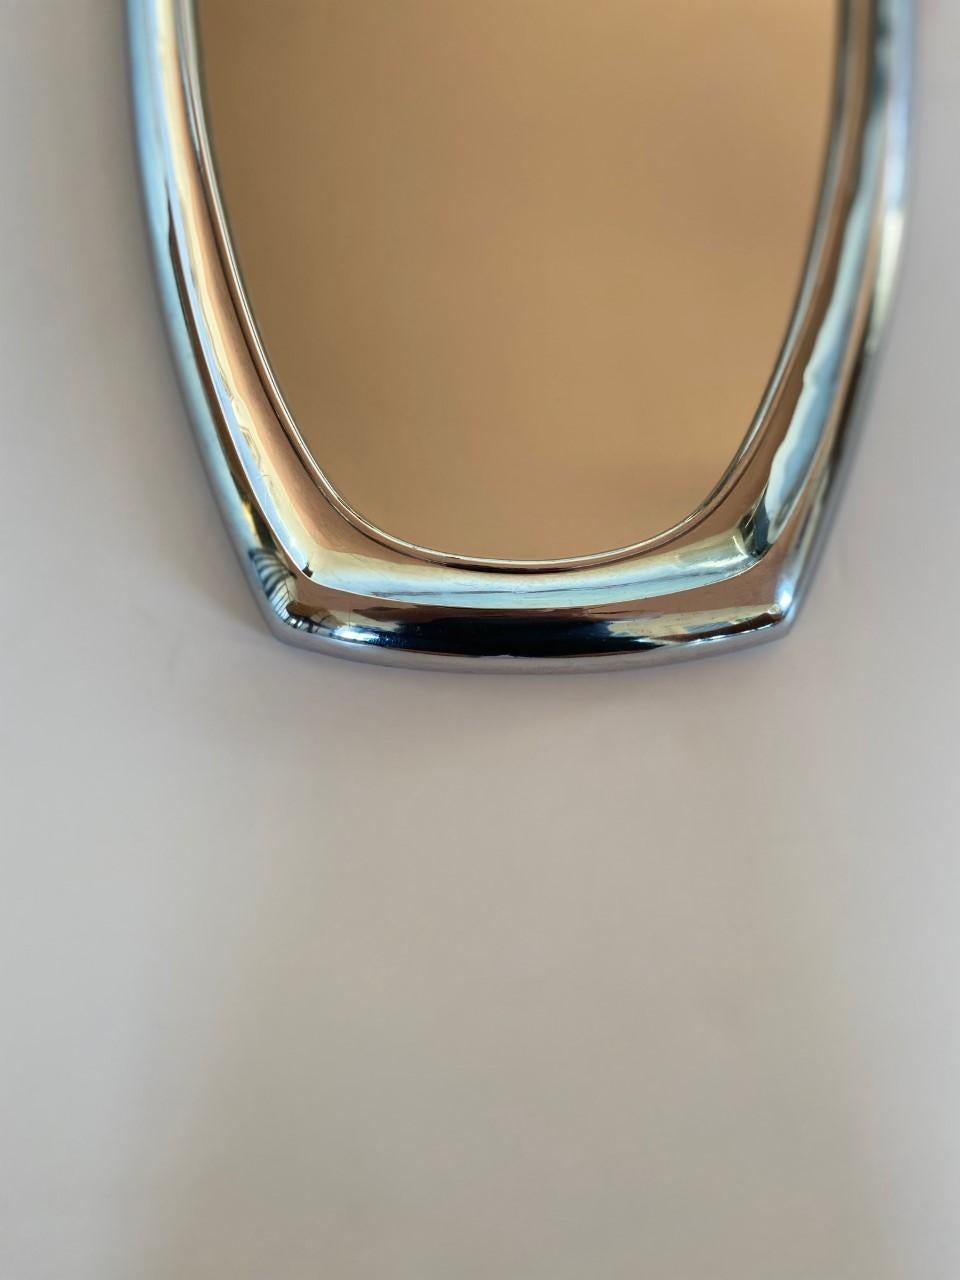 syroco mirror